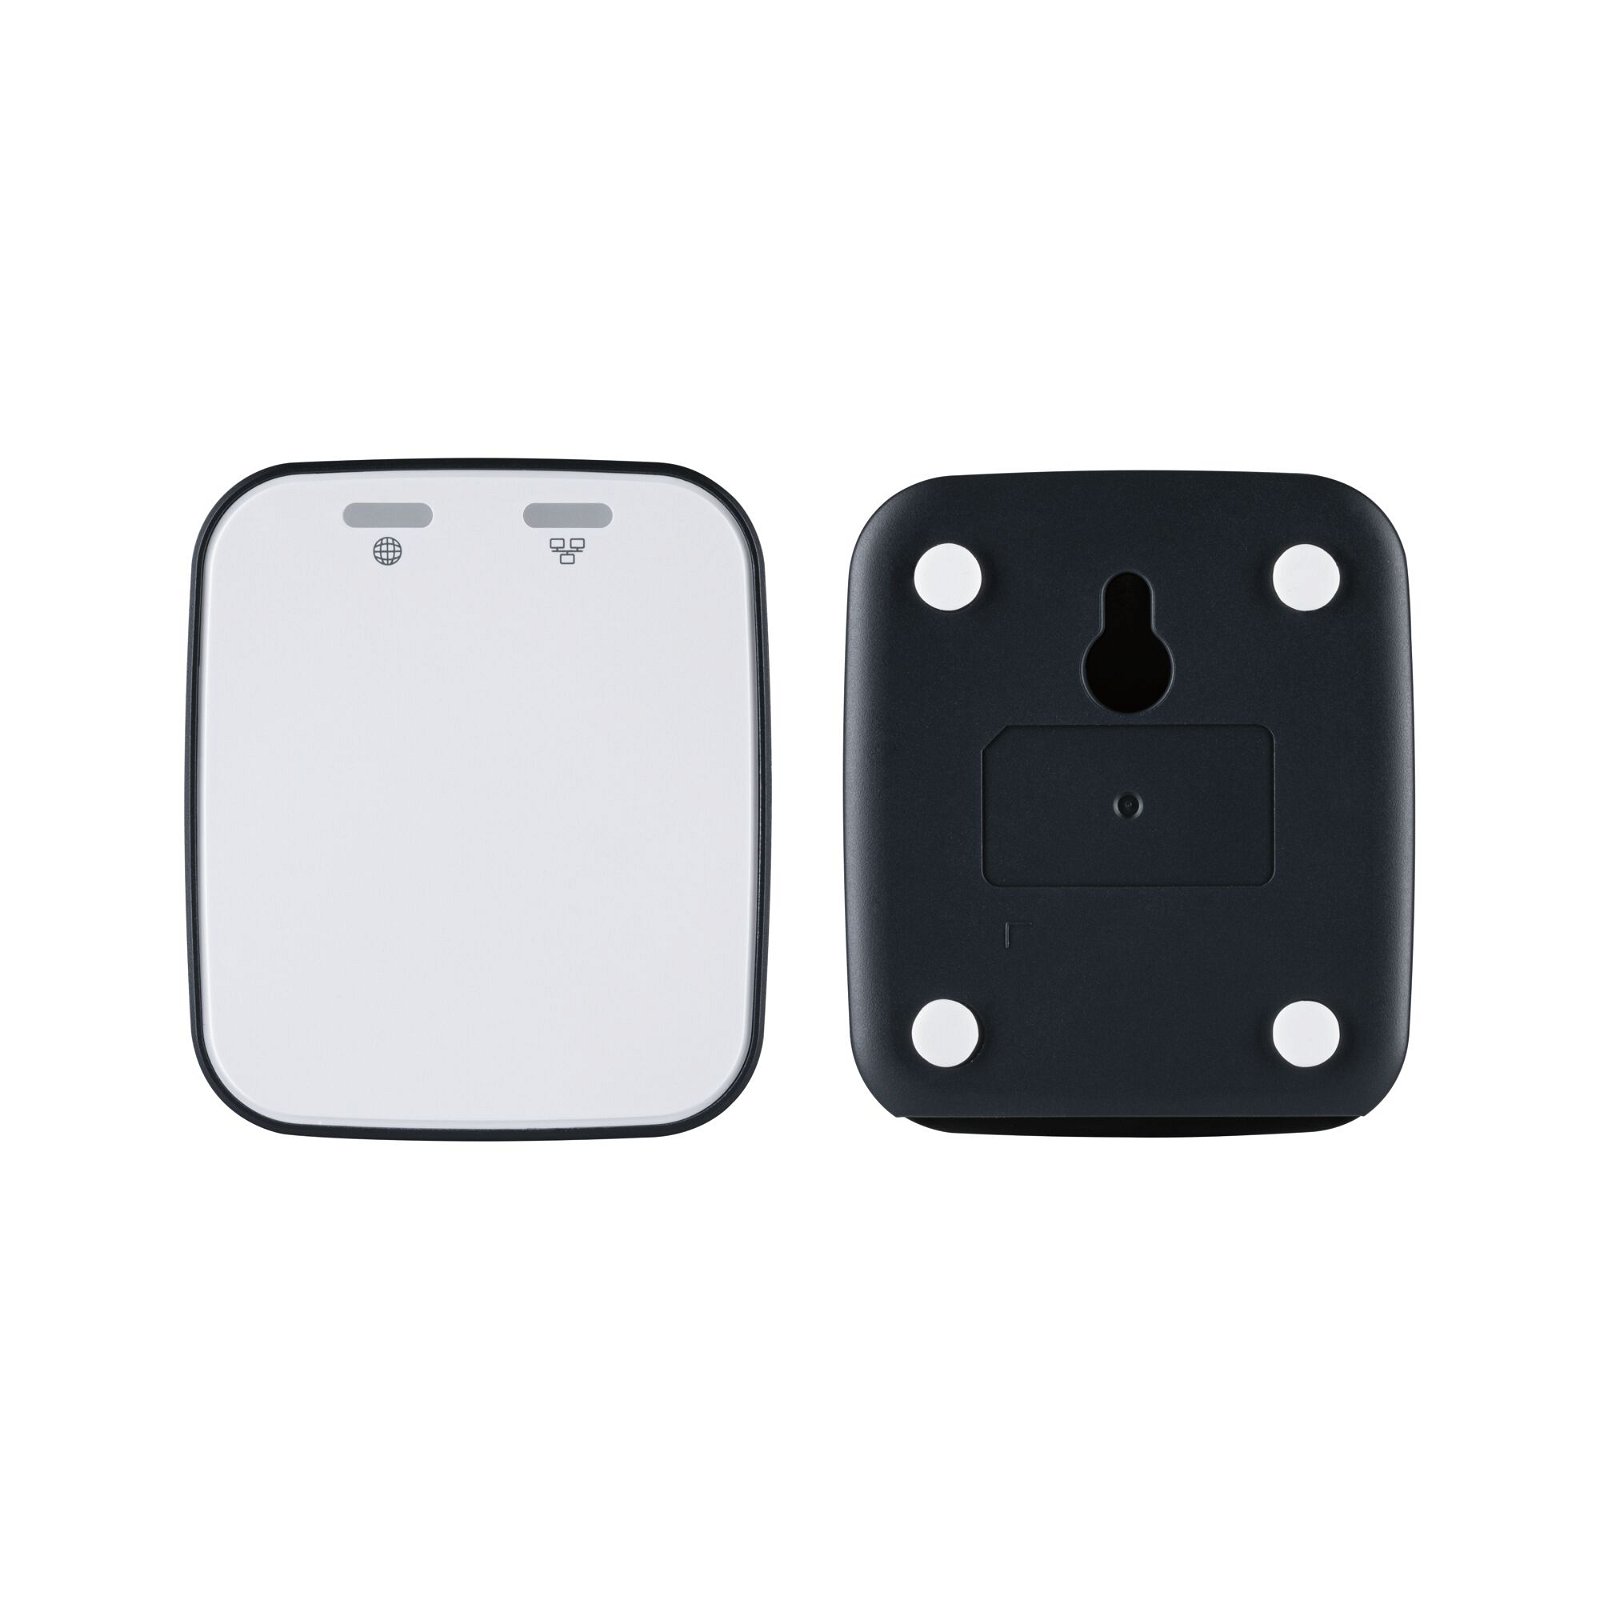 Kits de démarrage Smart Home smik Gateway avec bouton-poussoir mural + luminaire LED encastré Nova Plus Coin Set de base orientable Tunable White